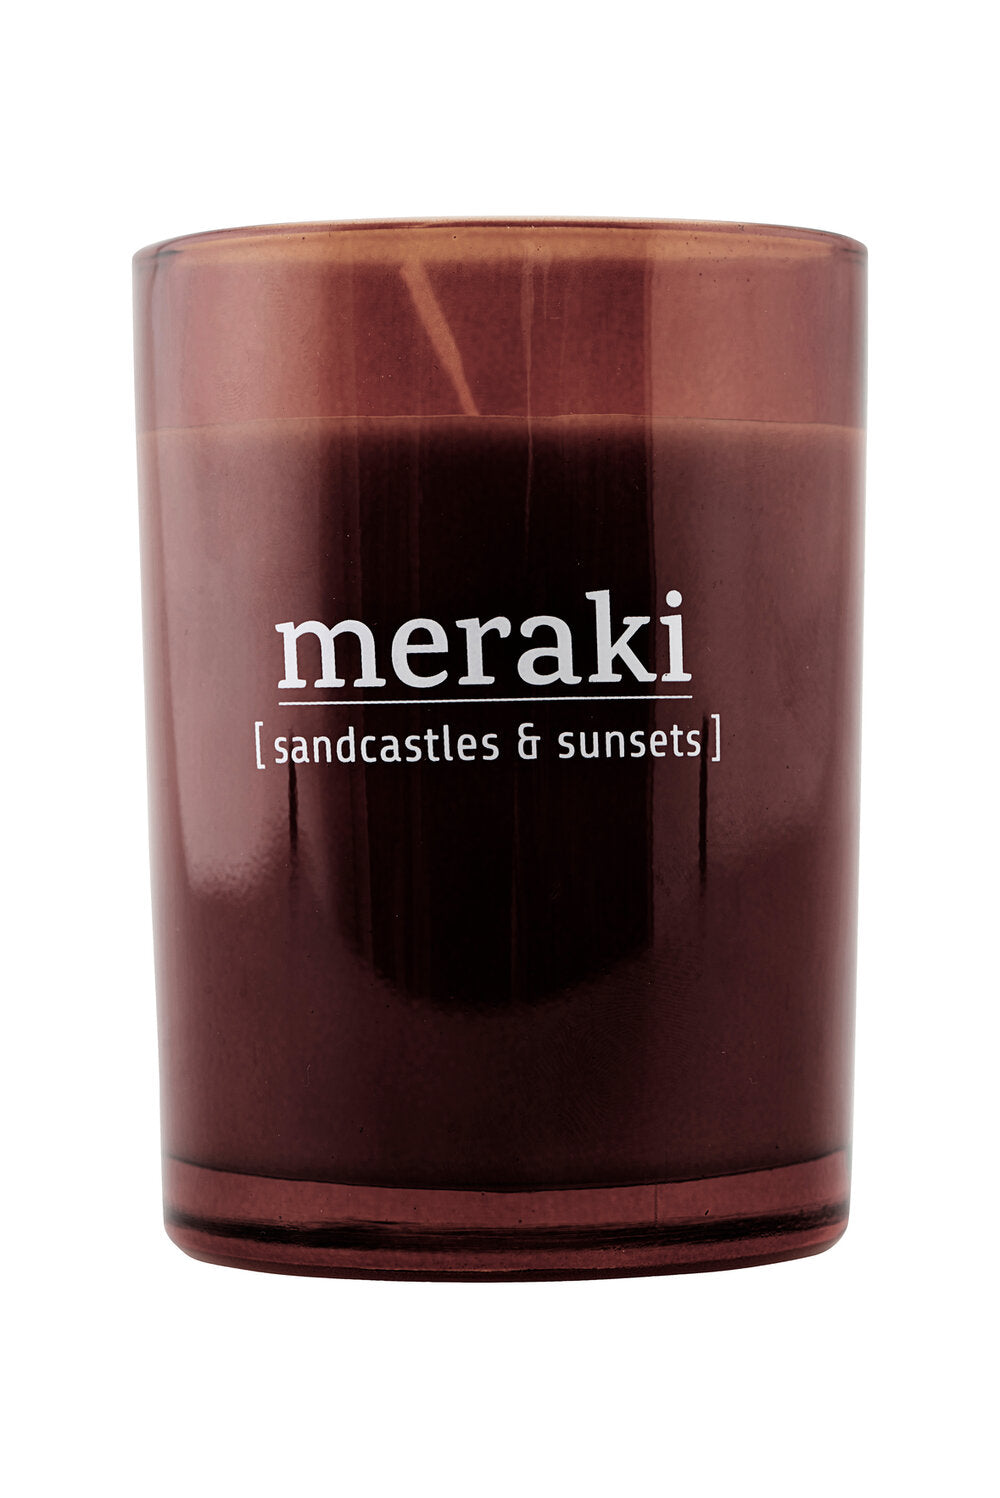 Meraki – Duftlys – Sandcastles & sunsets